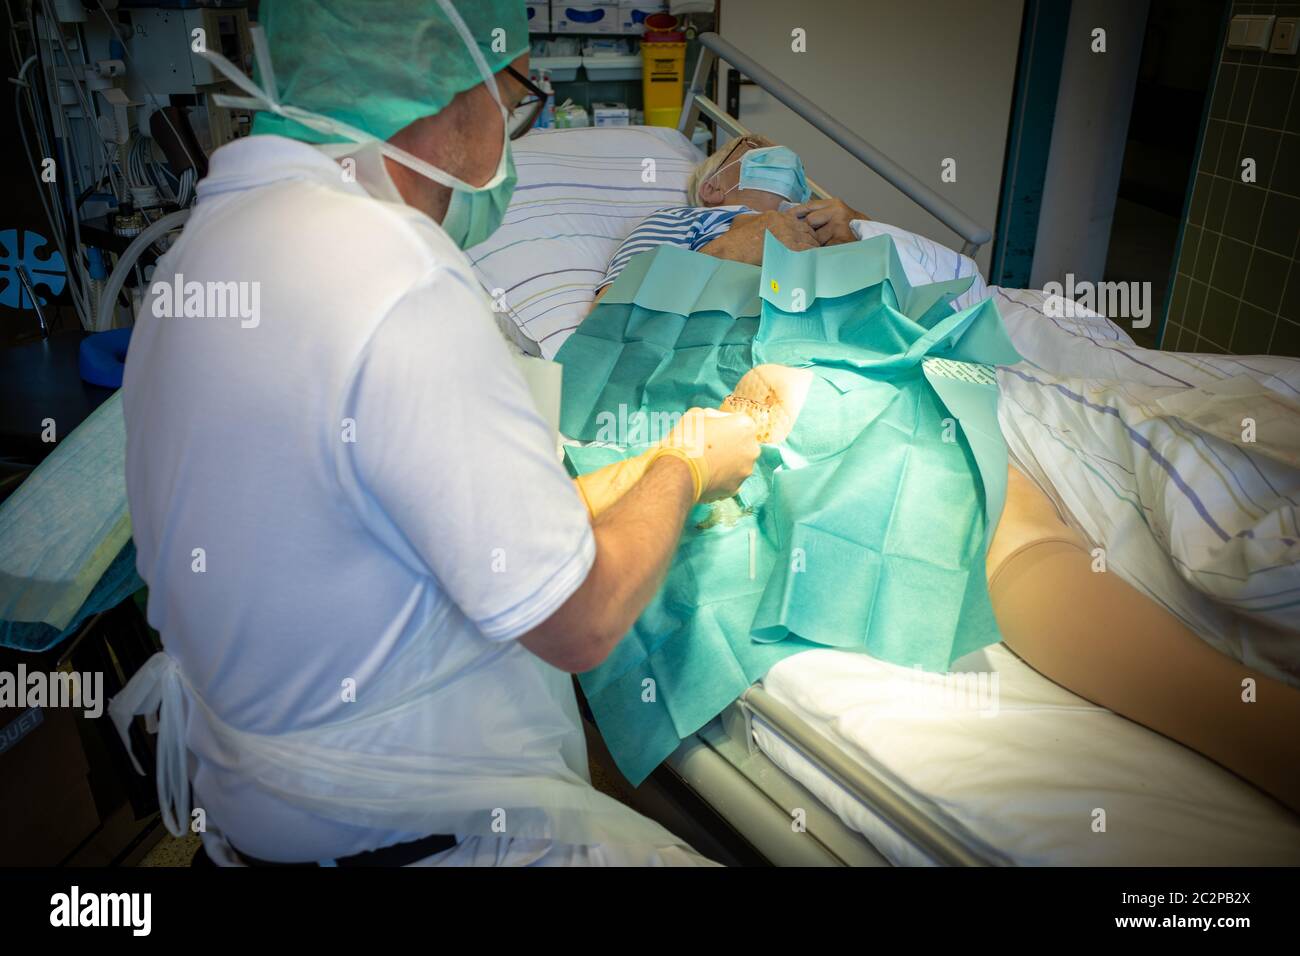 en un quirófano se perforan las heridas para examinarlas Foto de stock